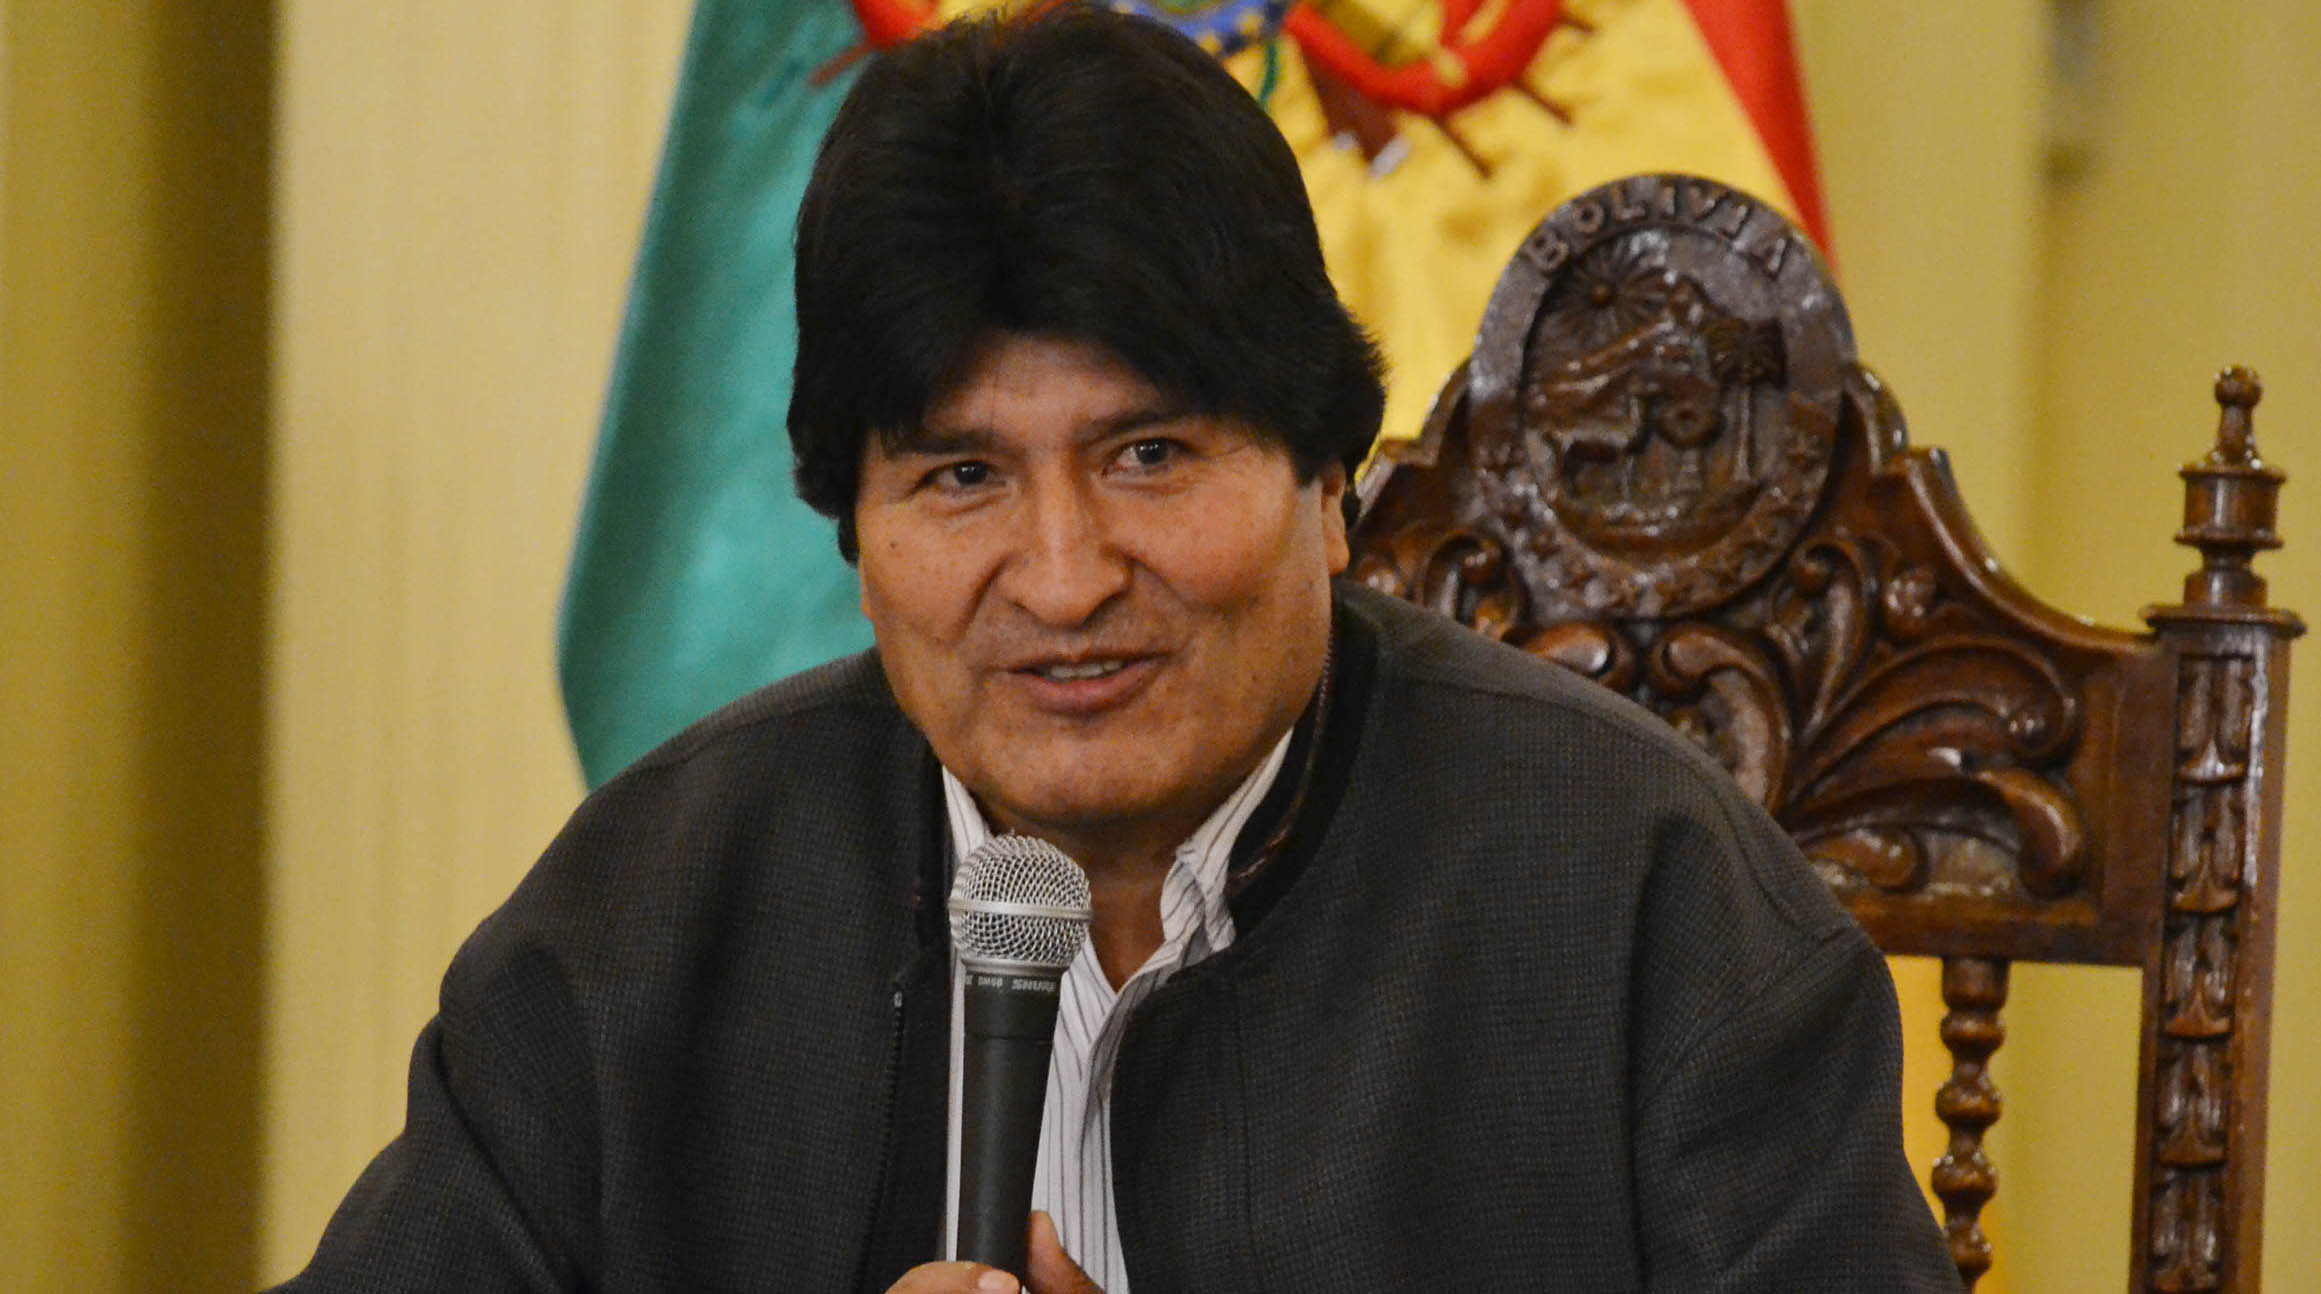 El mandatario boliviano, denunció a través de las redes sociales el afán que mantiene los Estados Unidos en conspirar contra el proceso revolucionario boliviano.